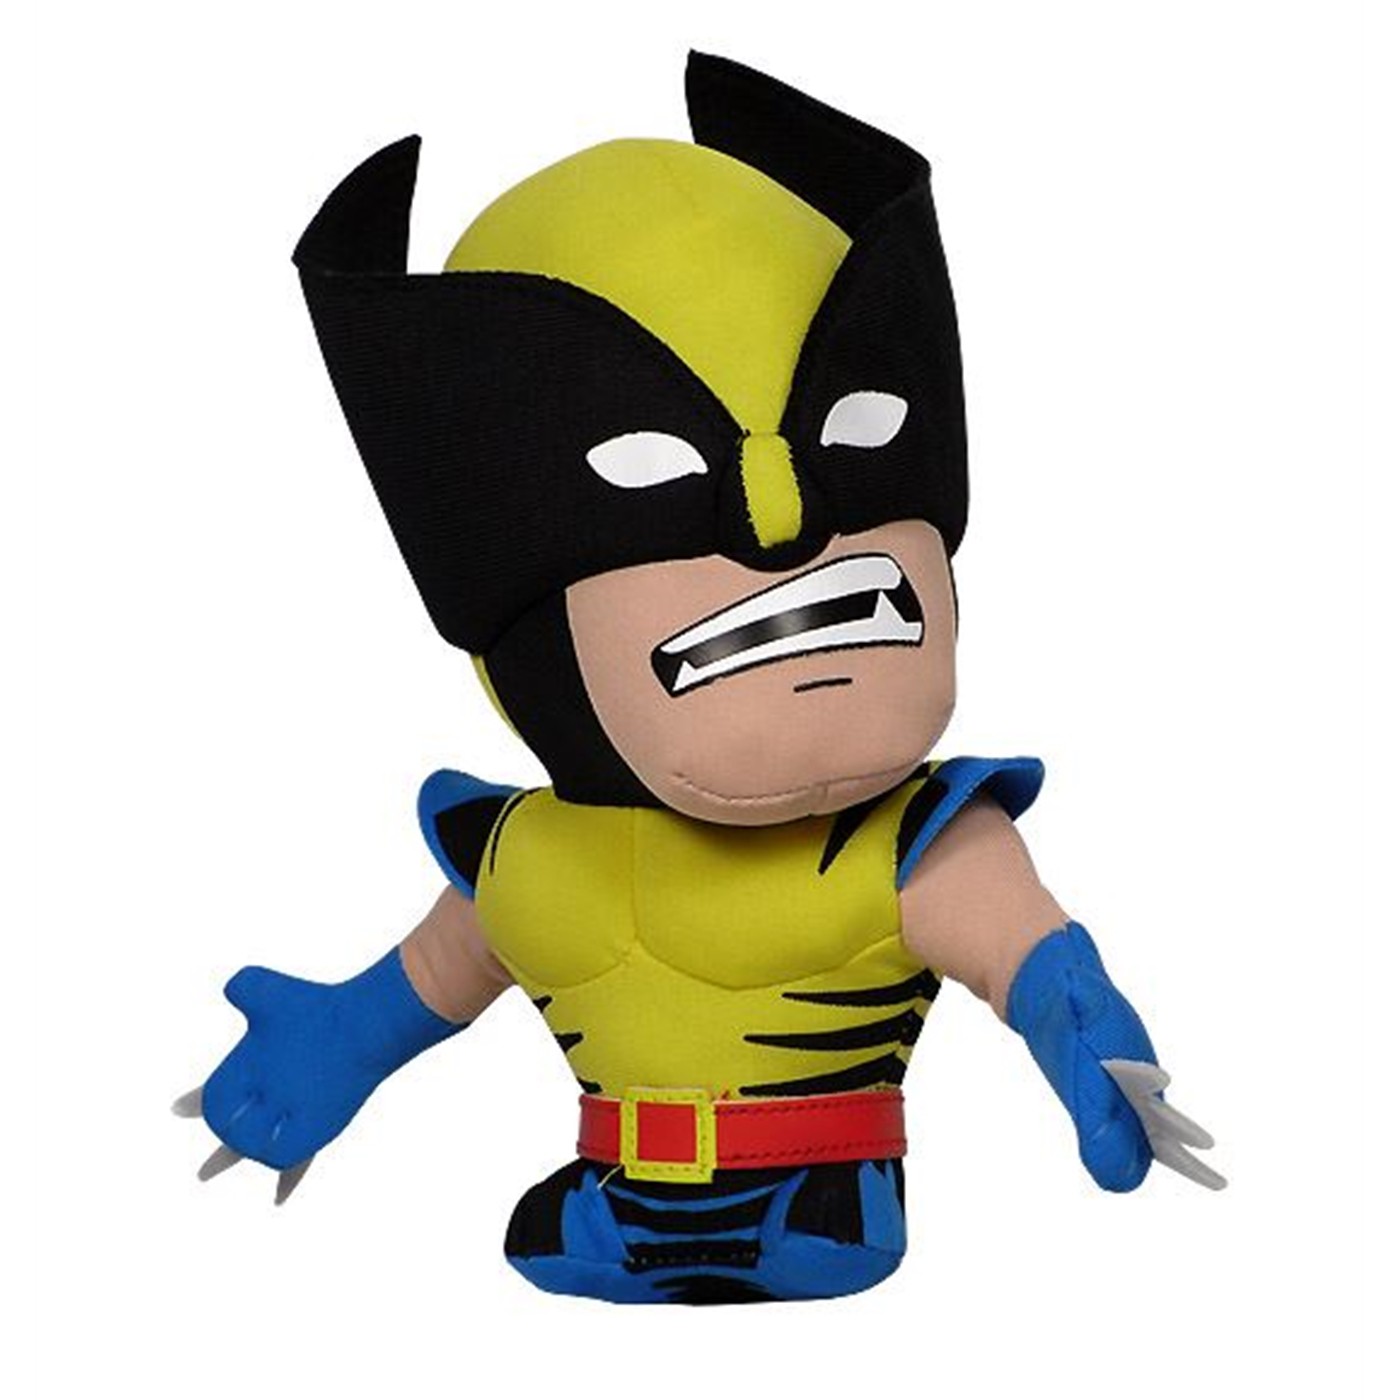 Wolverine Super Deformed Plush Toy